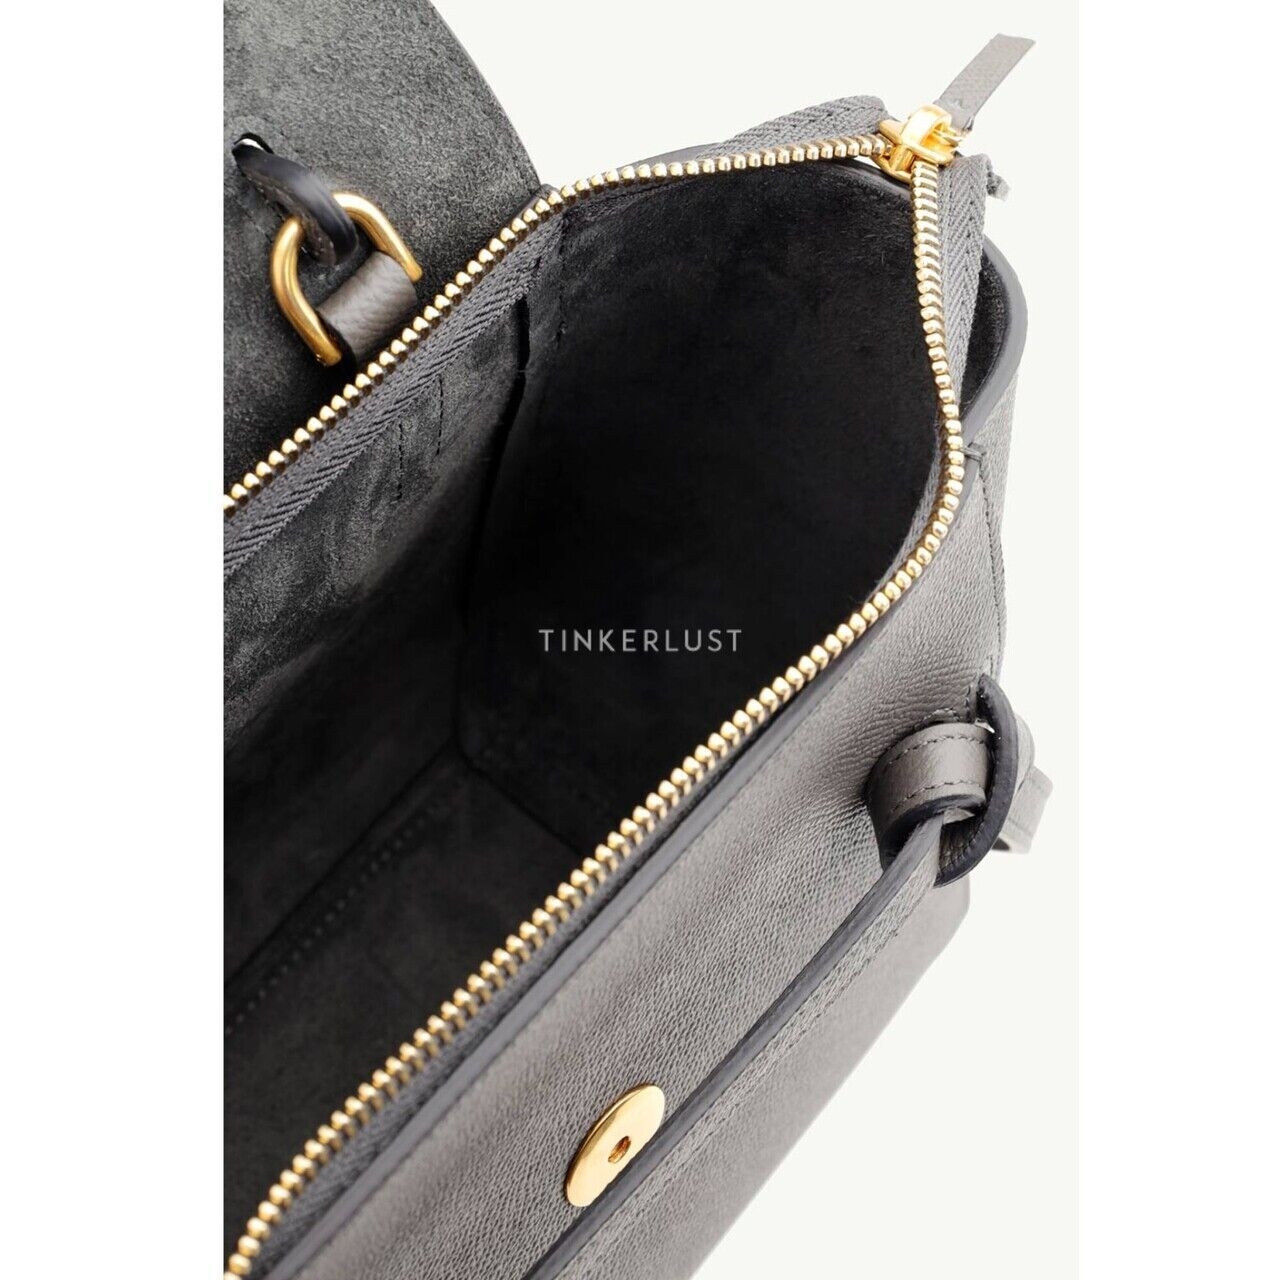 Celine Nano Belt Bag Grey Grained Leather Satchel